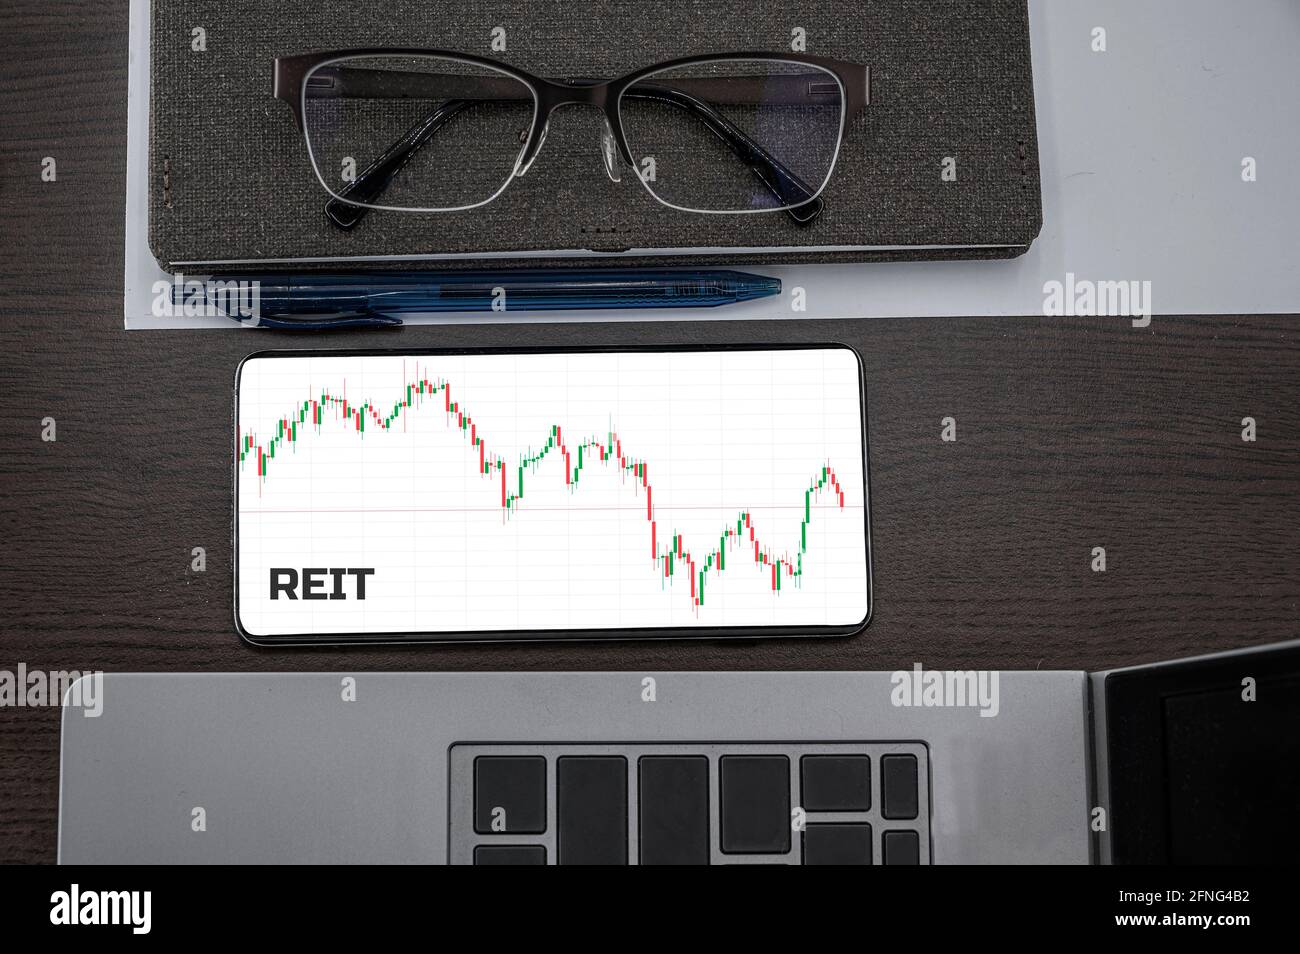 Acheter ou vendre le concept REIT. Fiducie d'investissement immobilier. Vue de dessus du tableau de chandeliers de prix des actions dans le téléphone sur la table près de l'ordinateur portable, bloc-notes et lunettes Banque D'Images